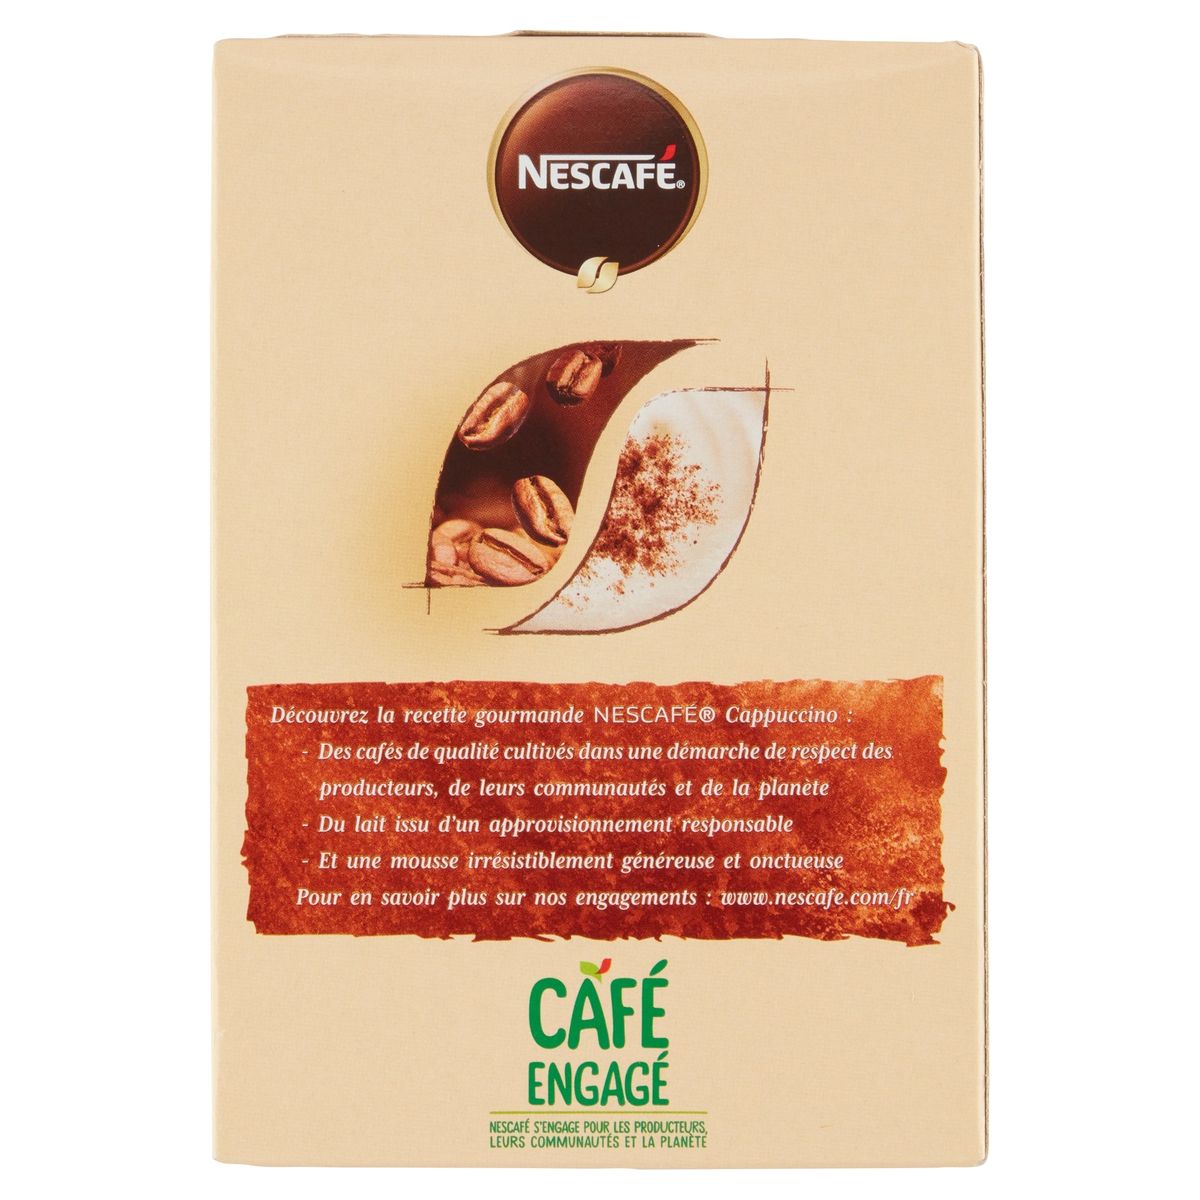 Nescafé Café Cappuccino Choco 8 x 18.5 g